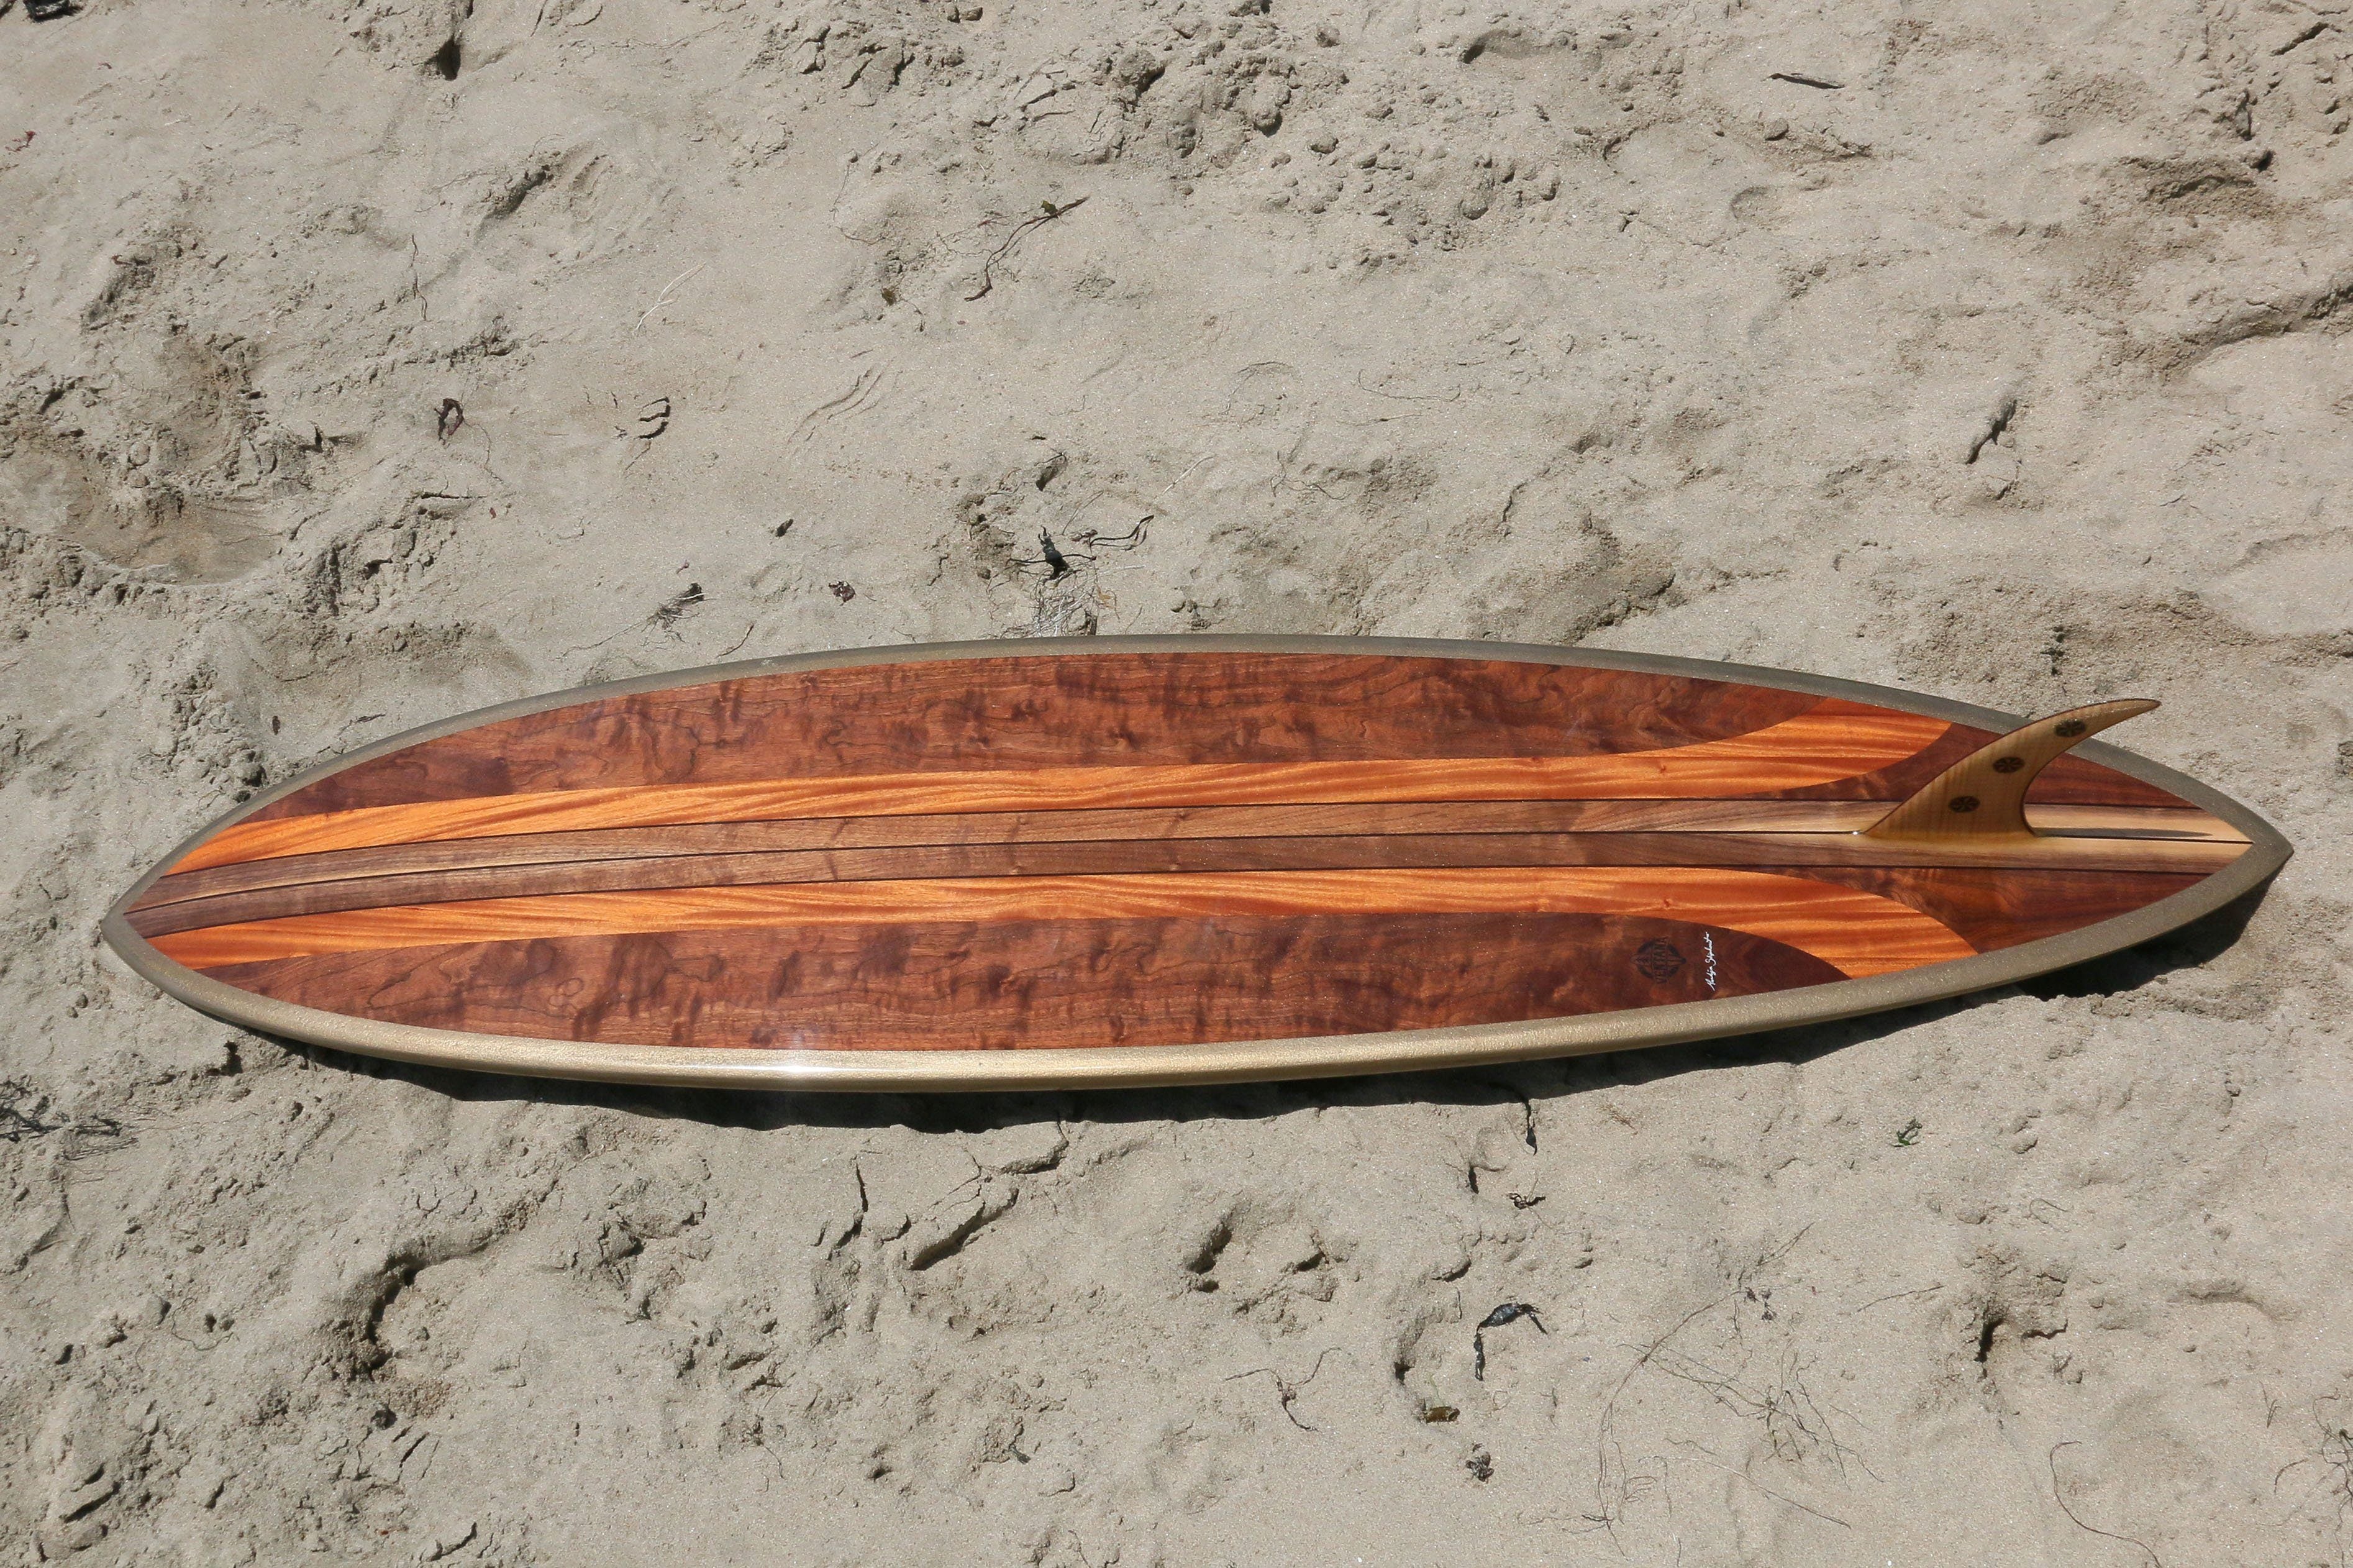 Surfboard - Starry Bolt 7&